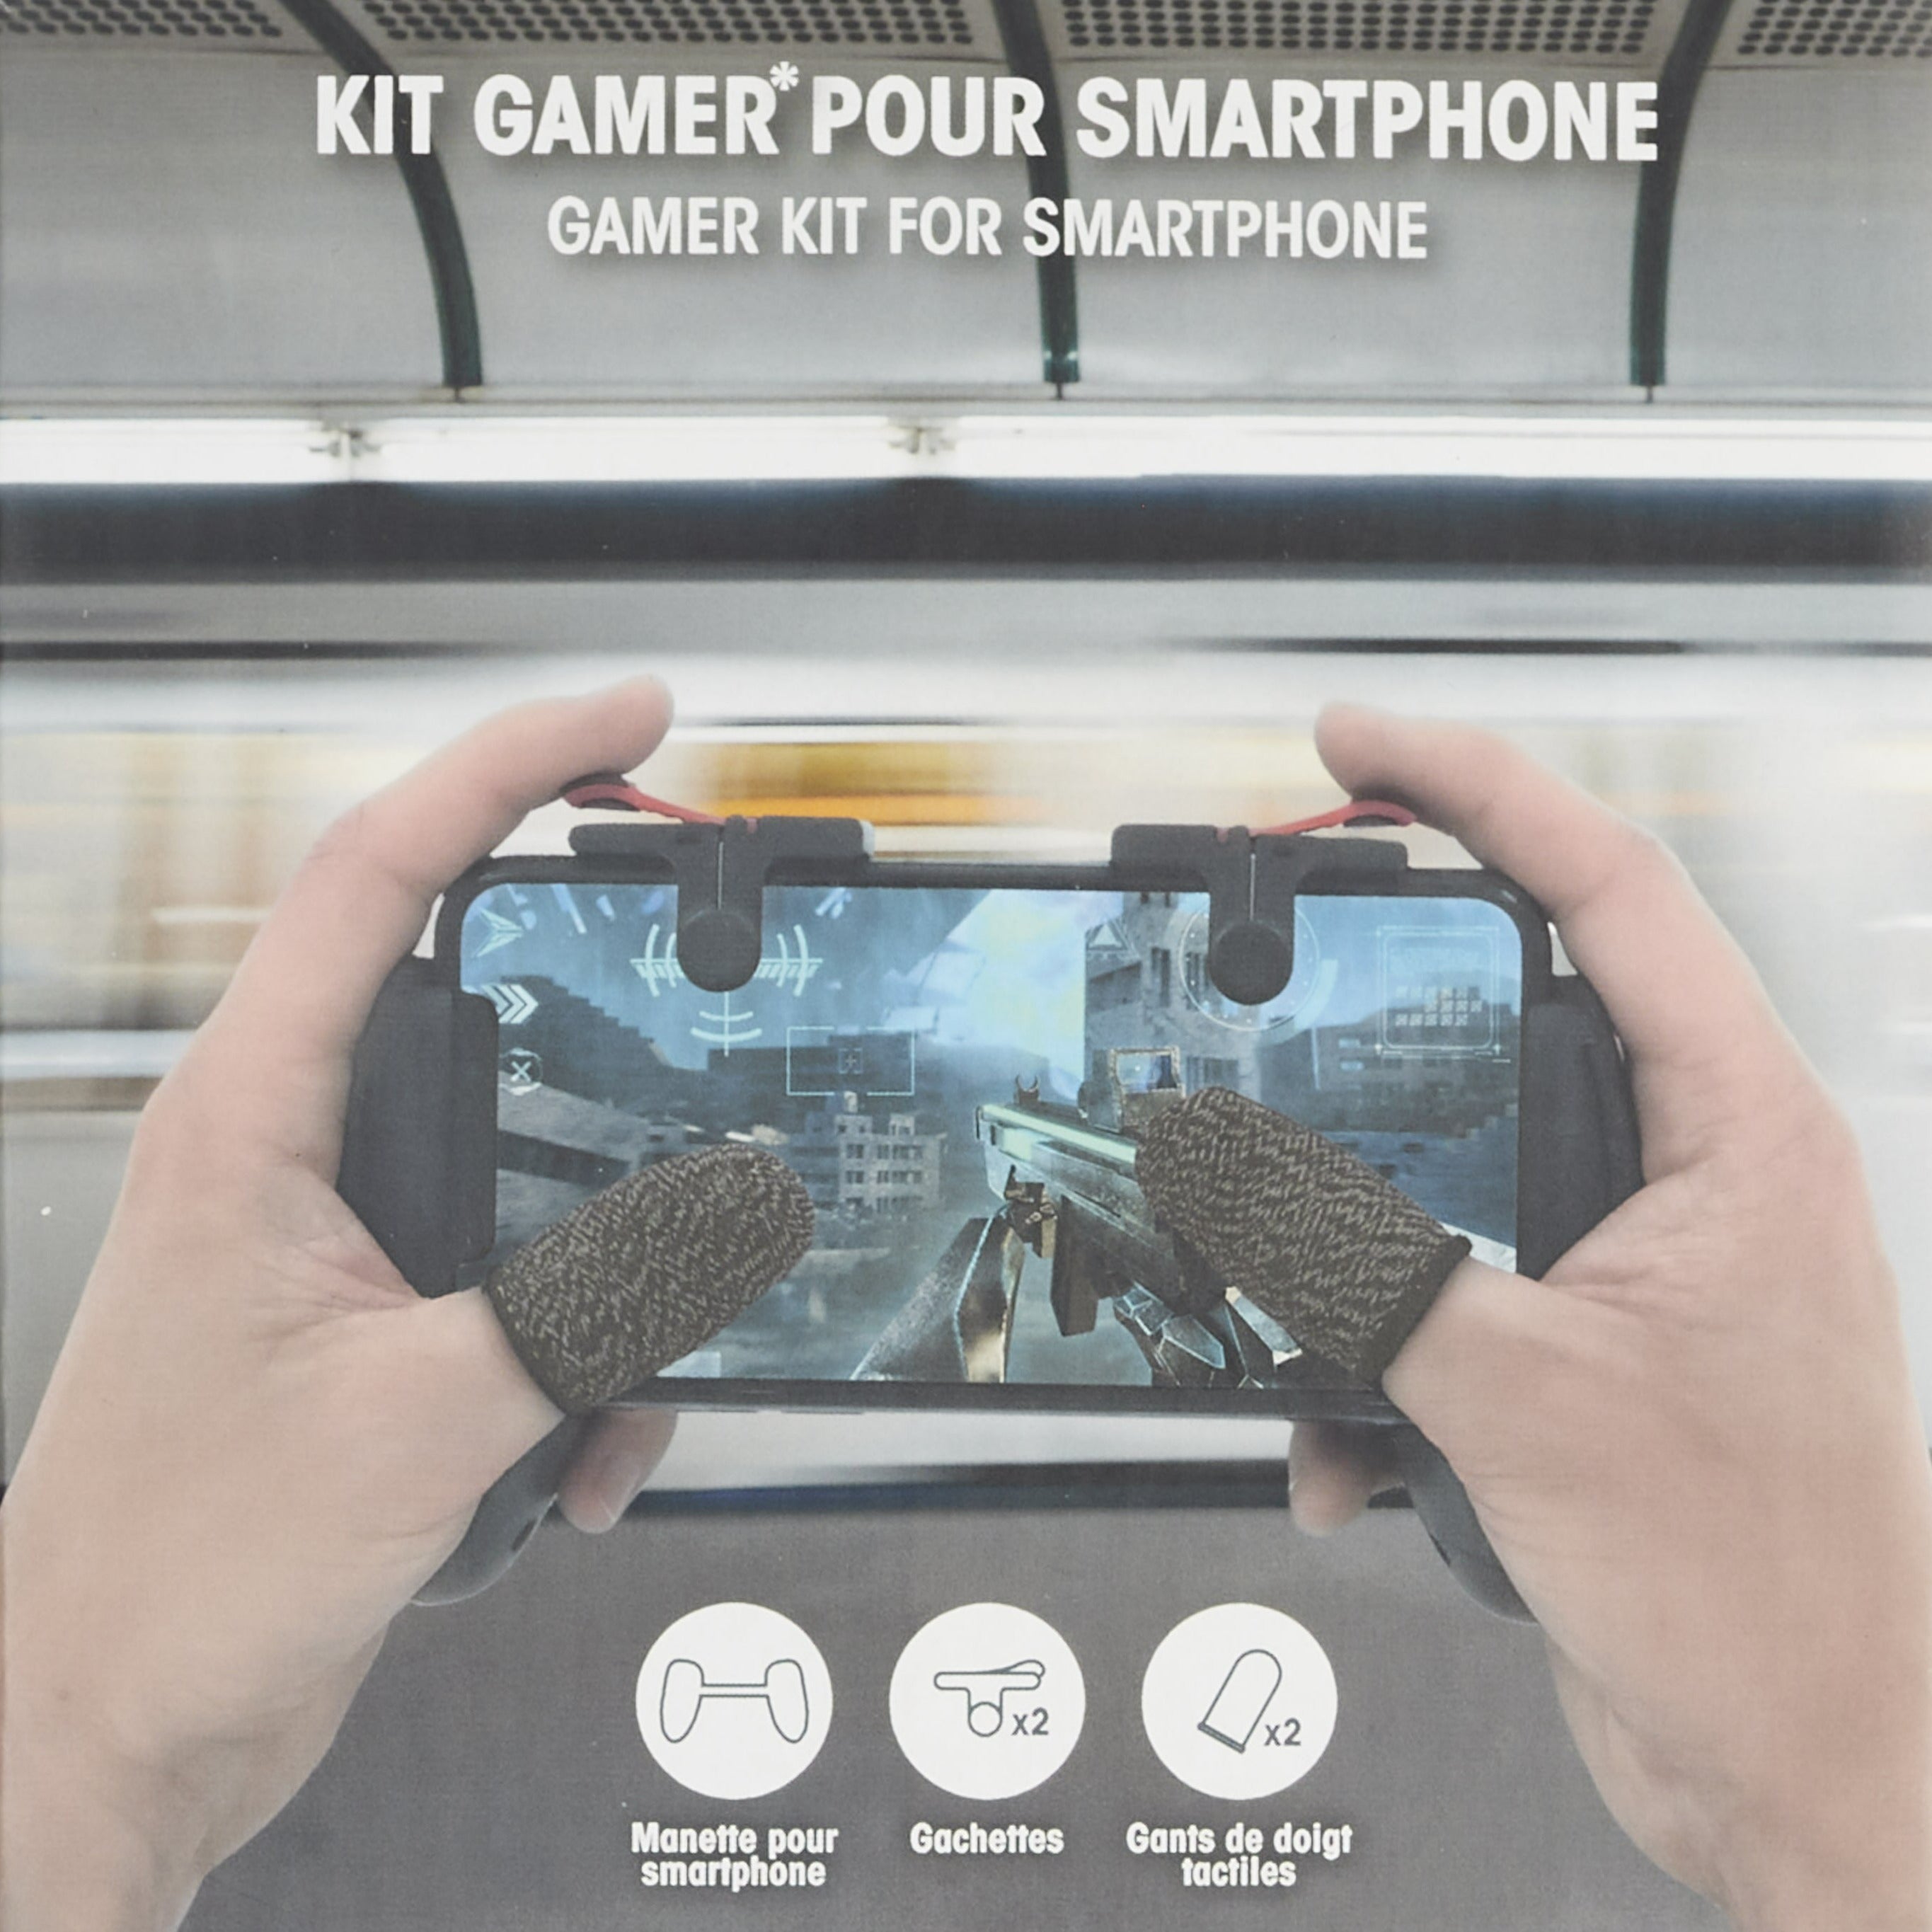 KIT GAMER POUR SMARTPHONE - La Chaise Longue